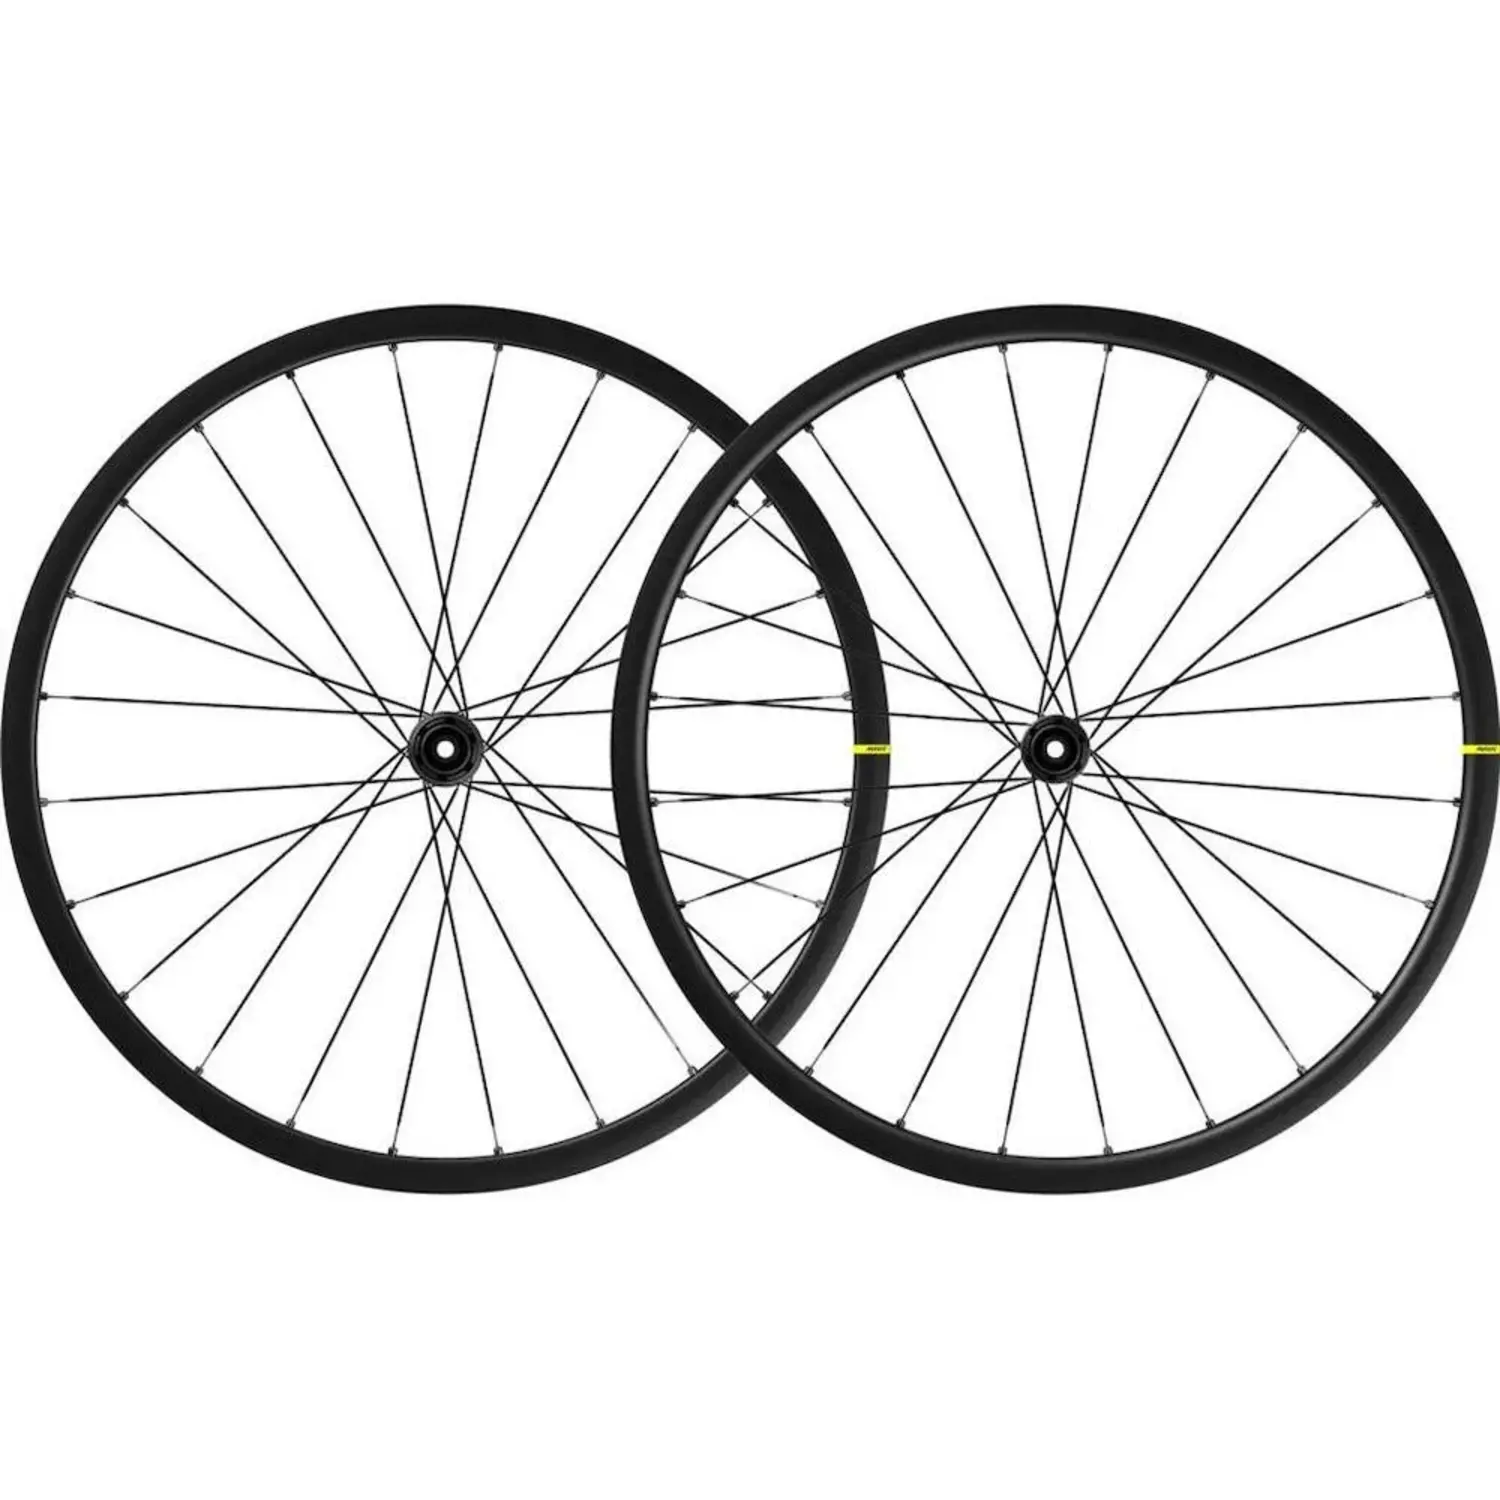 Mavic Ksyrium S Wheels, Center-Lock Disc, 700c, 12 x 142, Pair